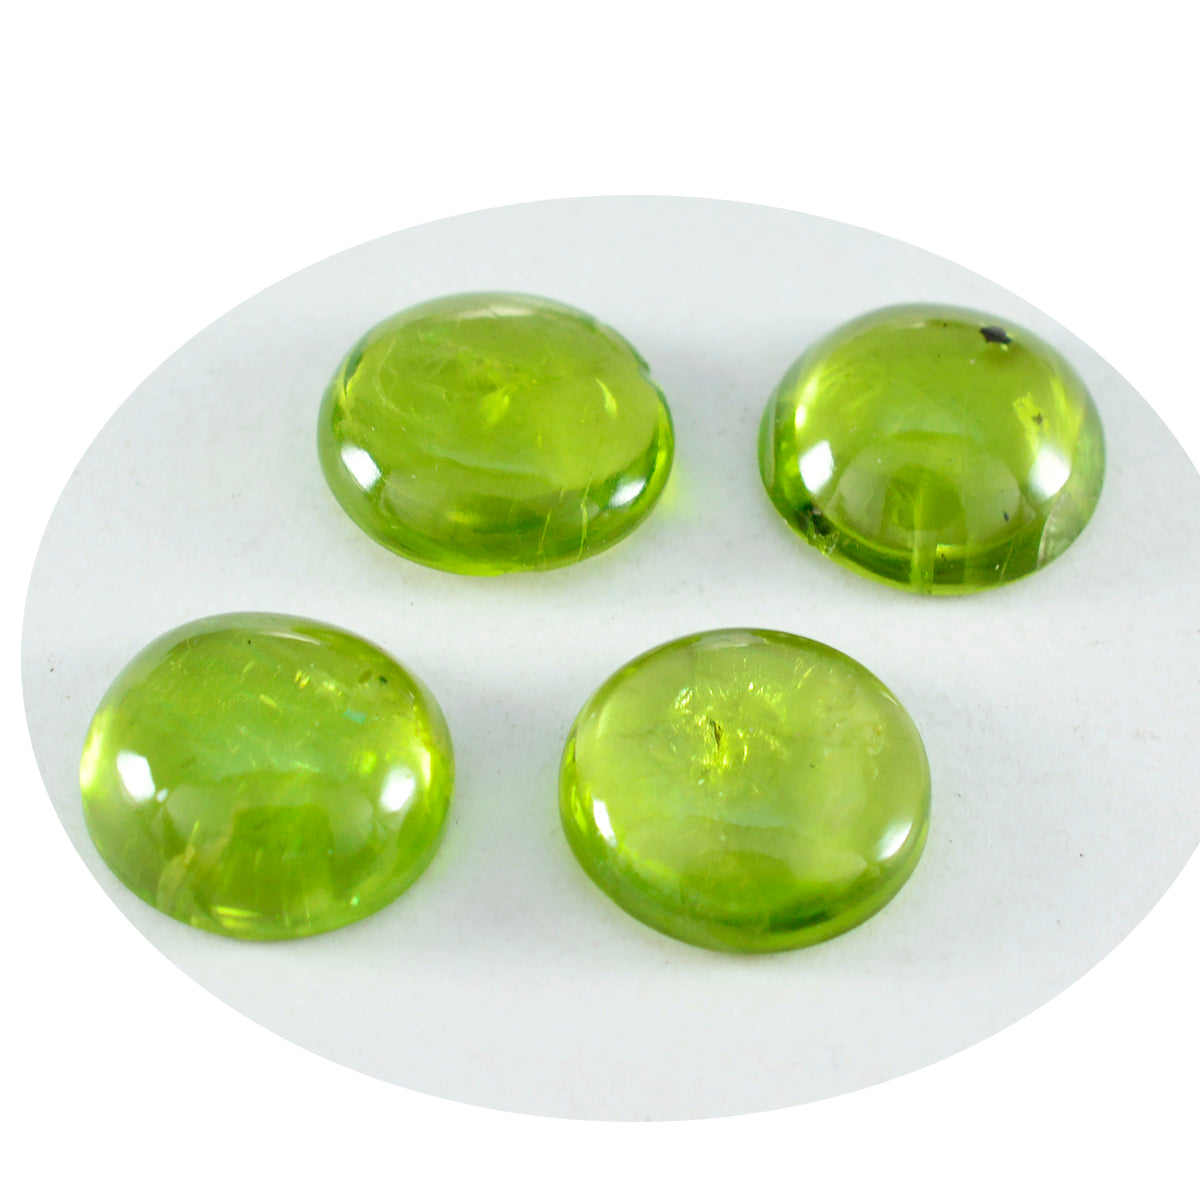 riyogems 1 шт. зеленый перидот кабошон 13x13 мм круглая форма красивый качественный свободный драгоценный камень